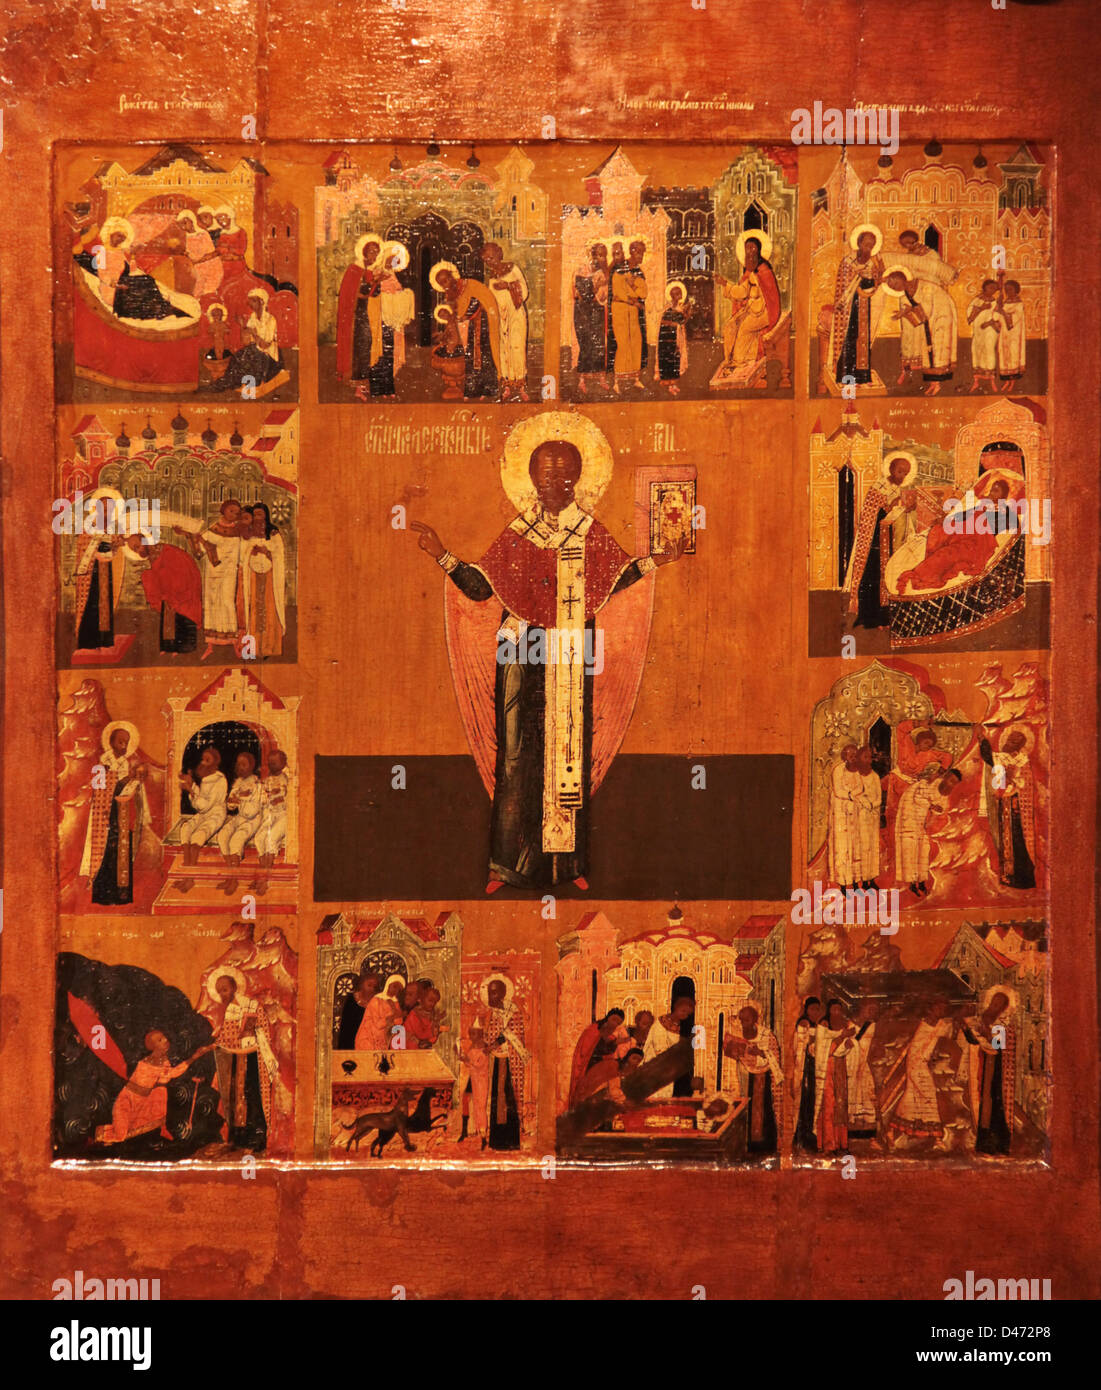 L'icône orthodoxe Saint Nicolas le Wonder-Zaraysky (travailleur), avec l'histoire de vie. Seconde moitié du 17ct. Galitch, la Russie. Banque D'Images